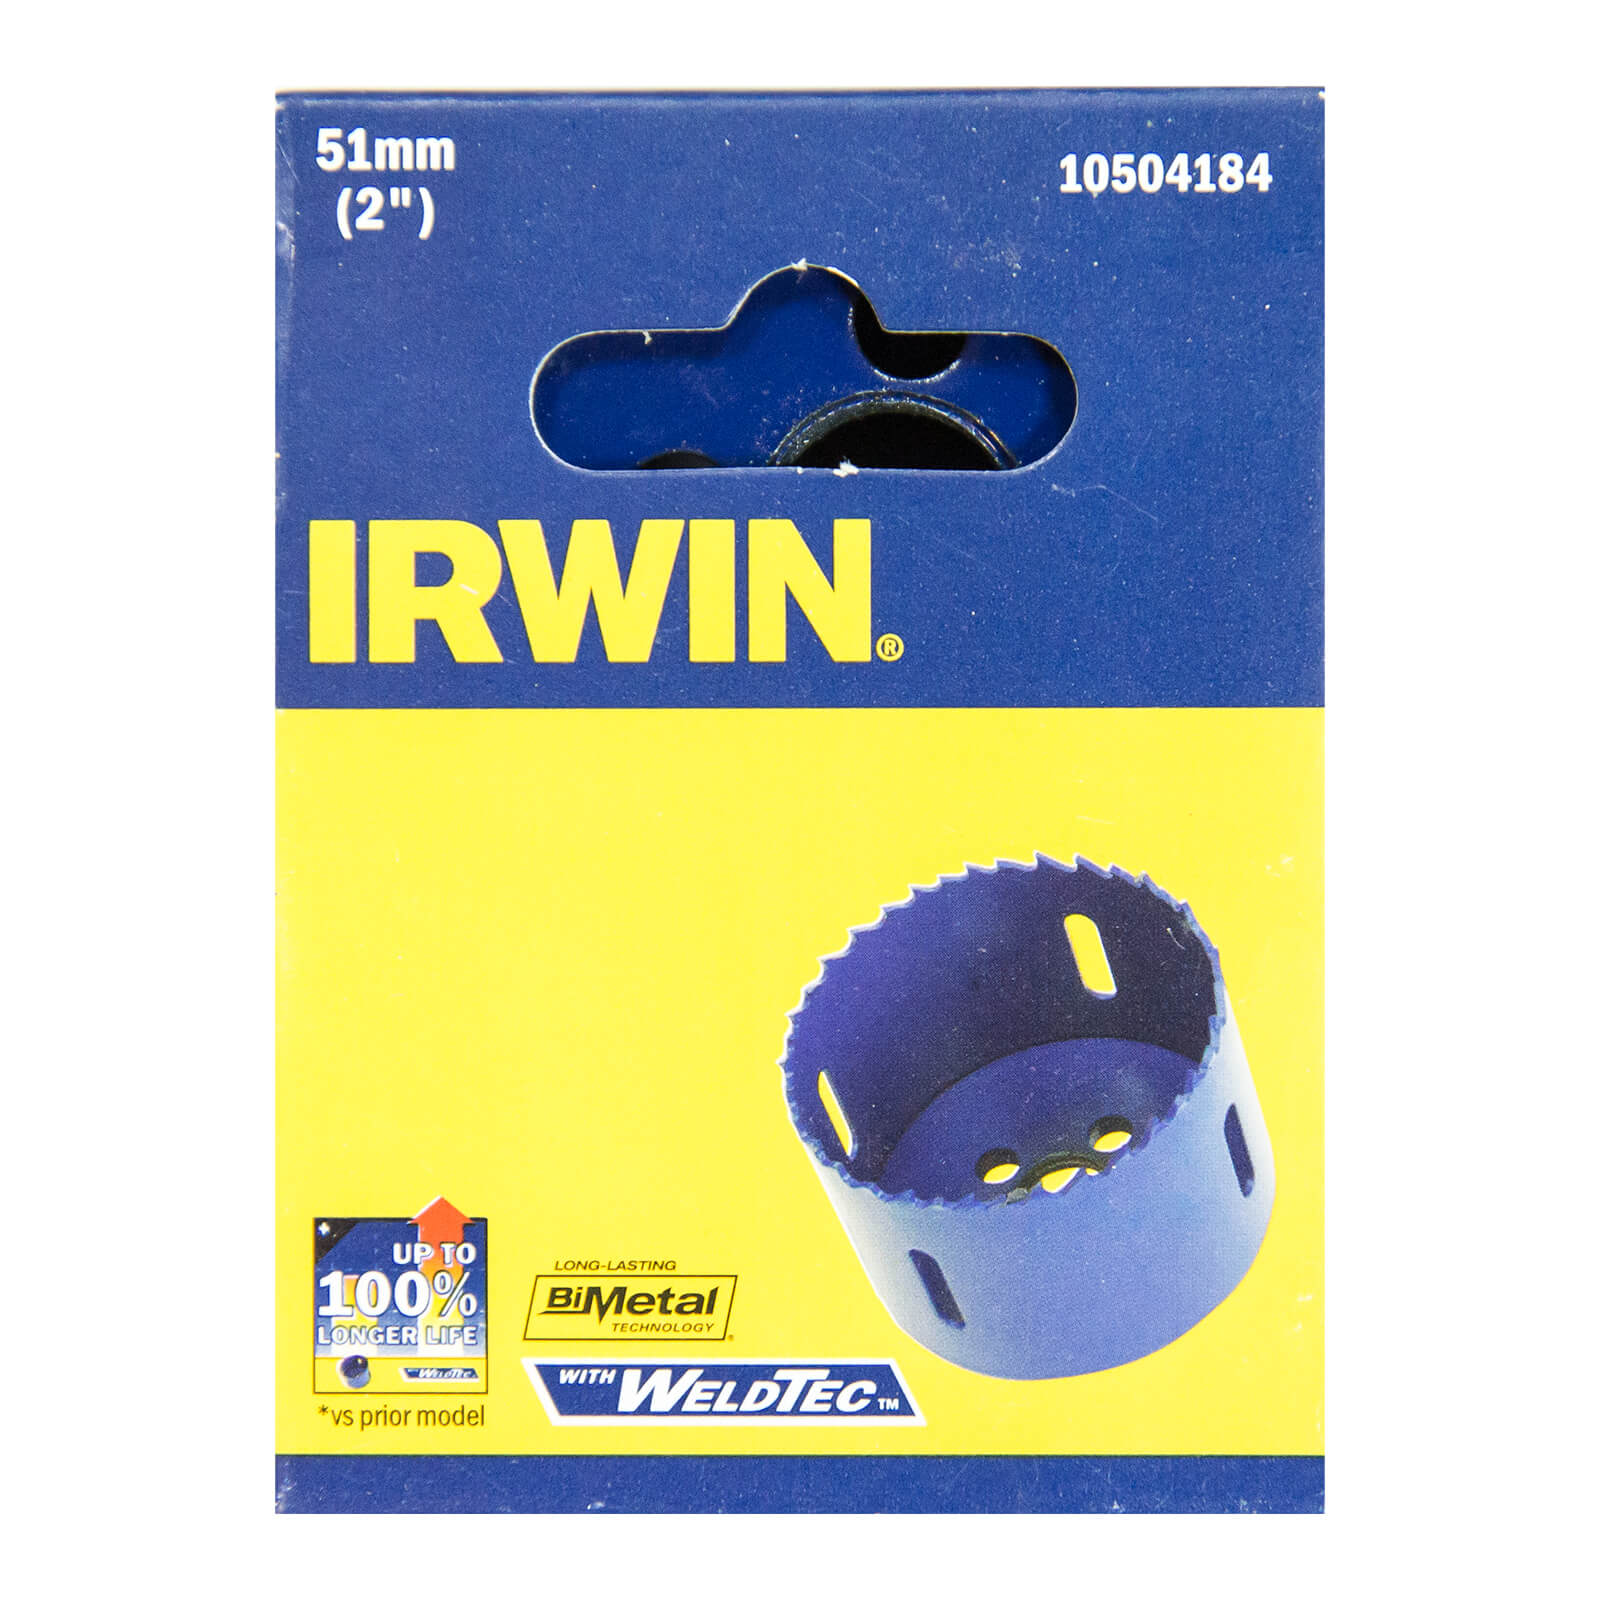 IRWIN Bi-Metal Hole Saw - 51mm